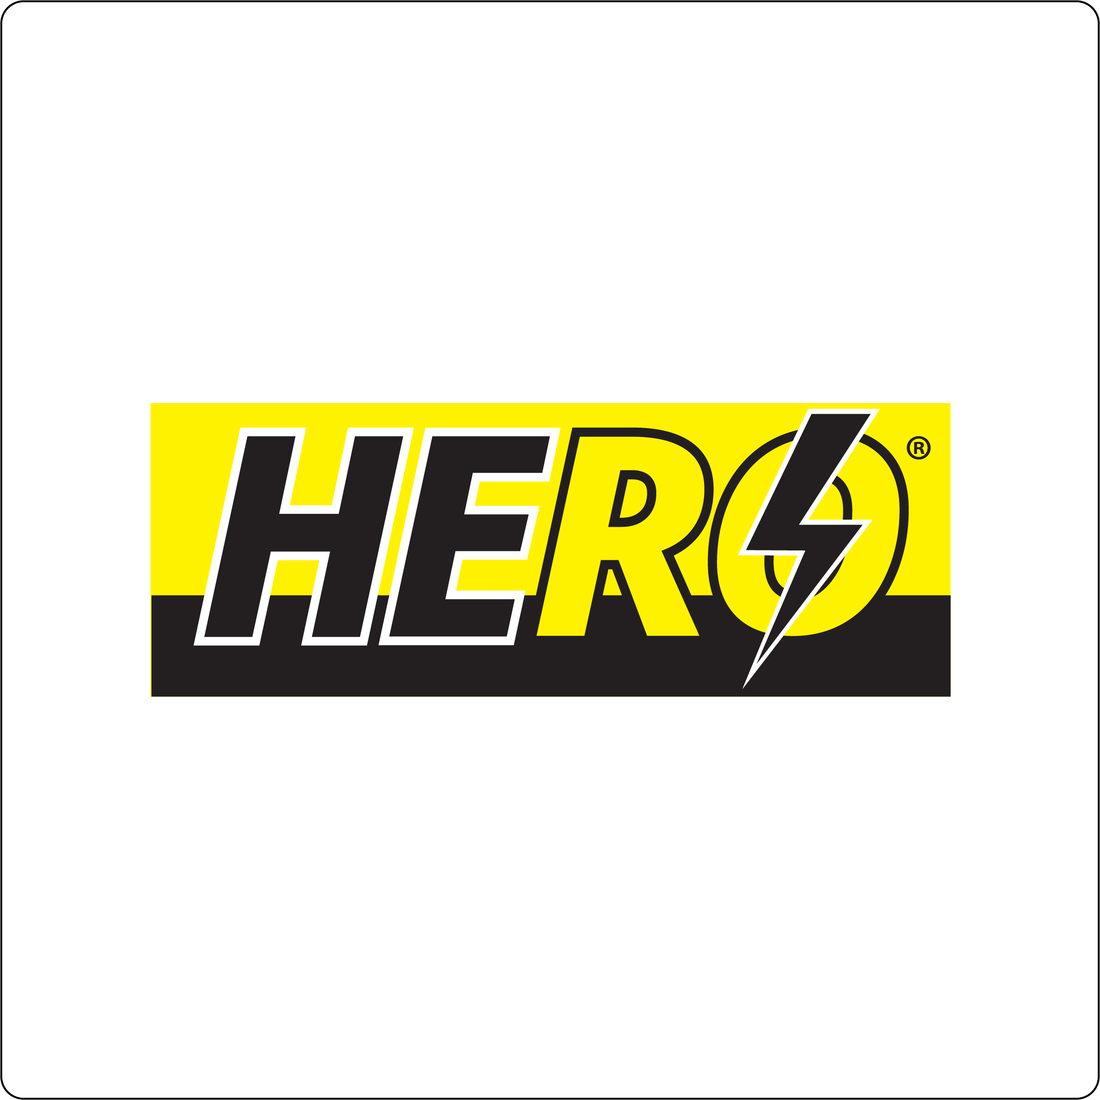  Hero®